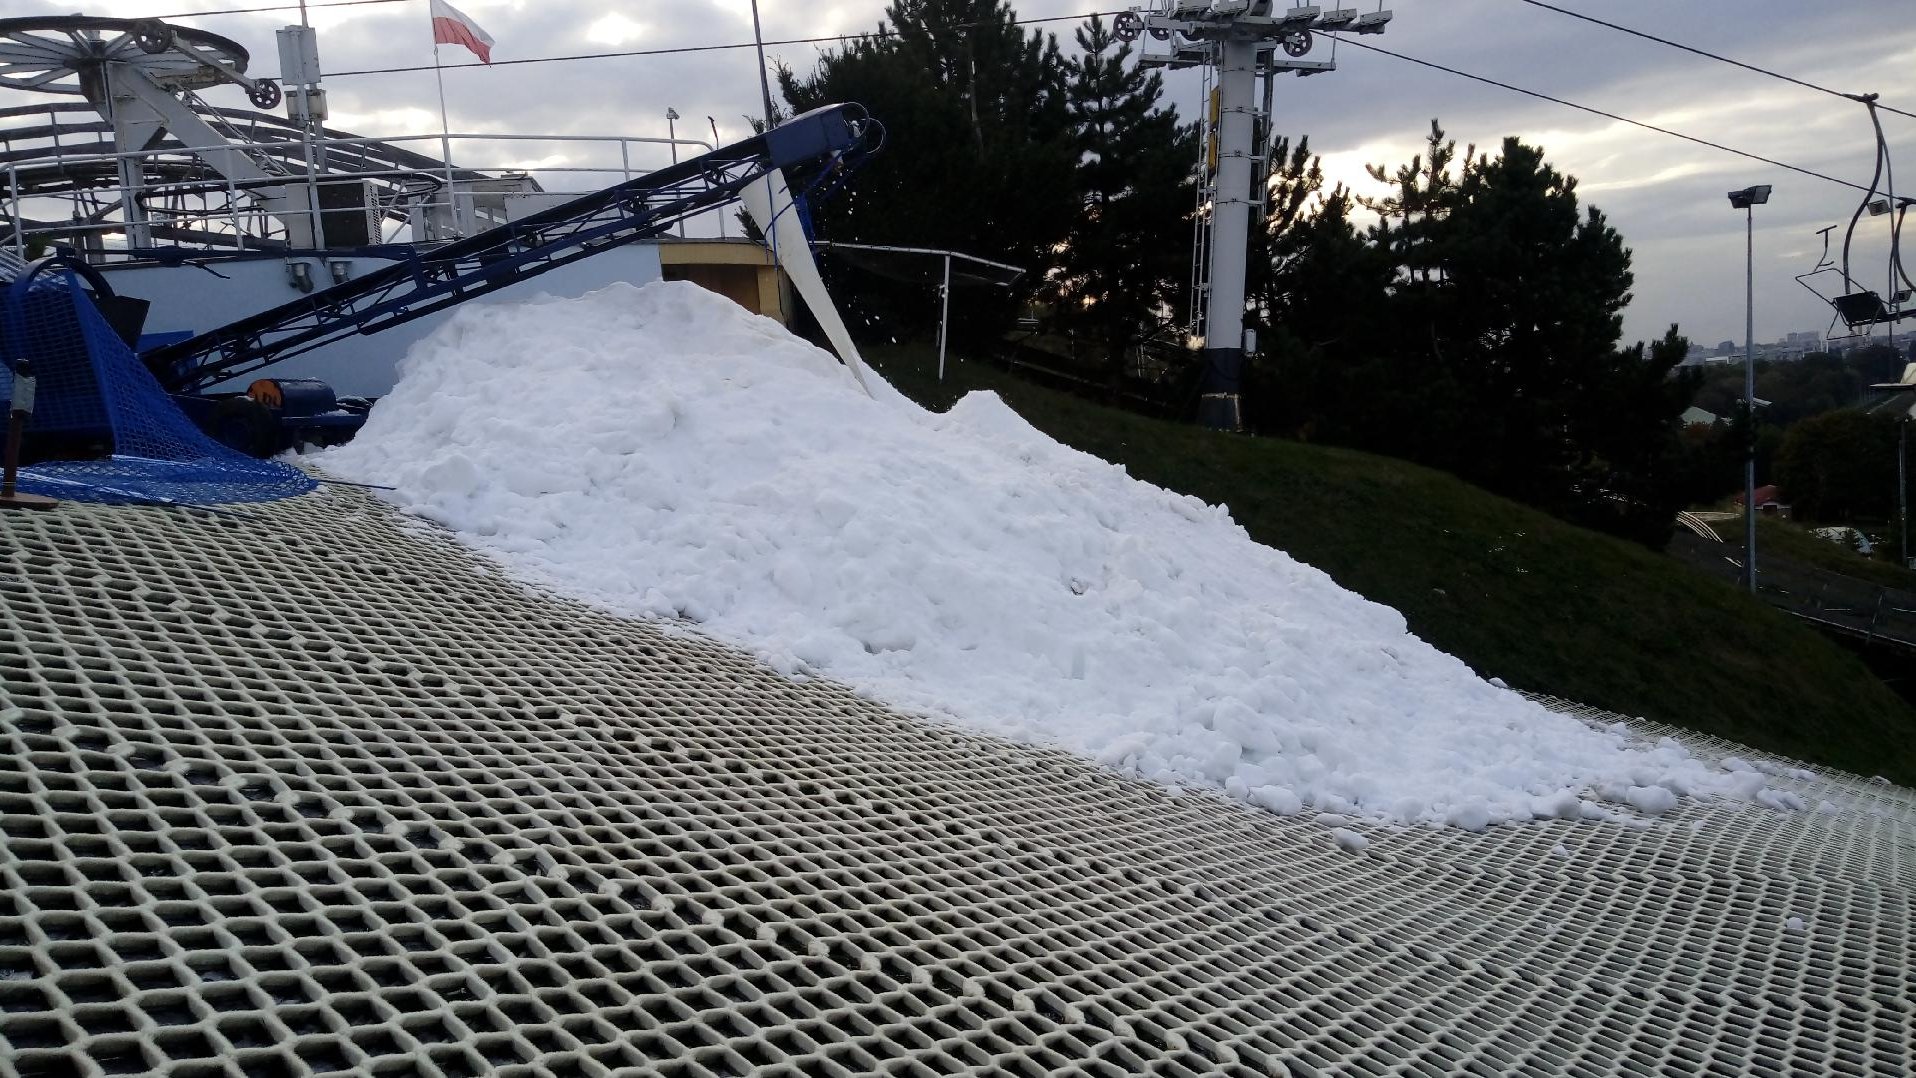 Zdjęcie przedstawia stok narciarski częściowo pokryty sniegiem.